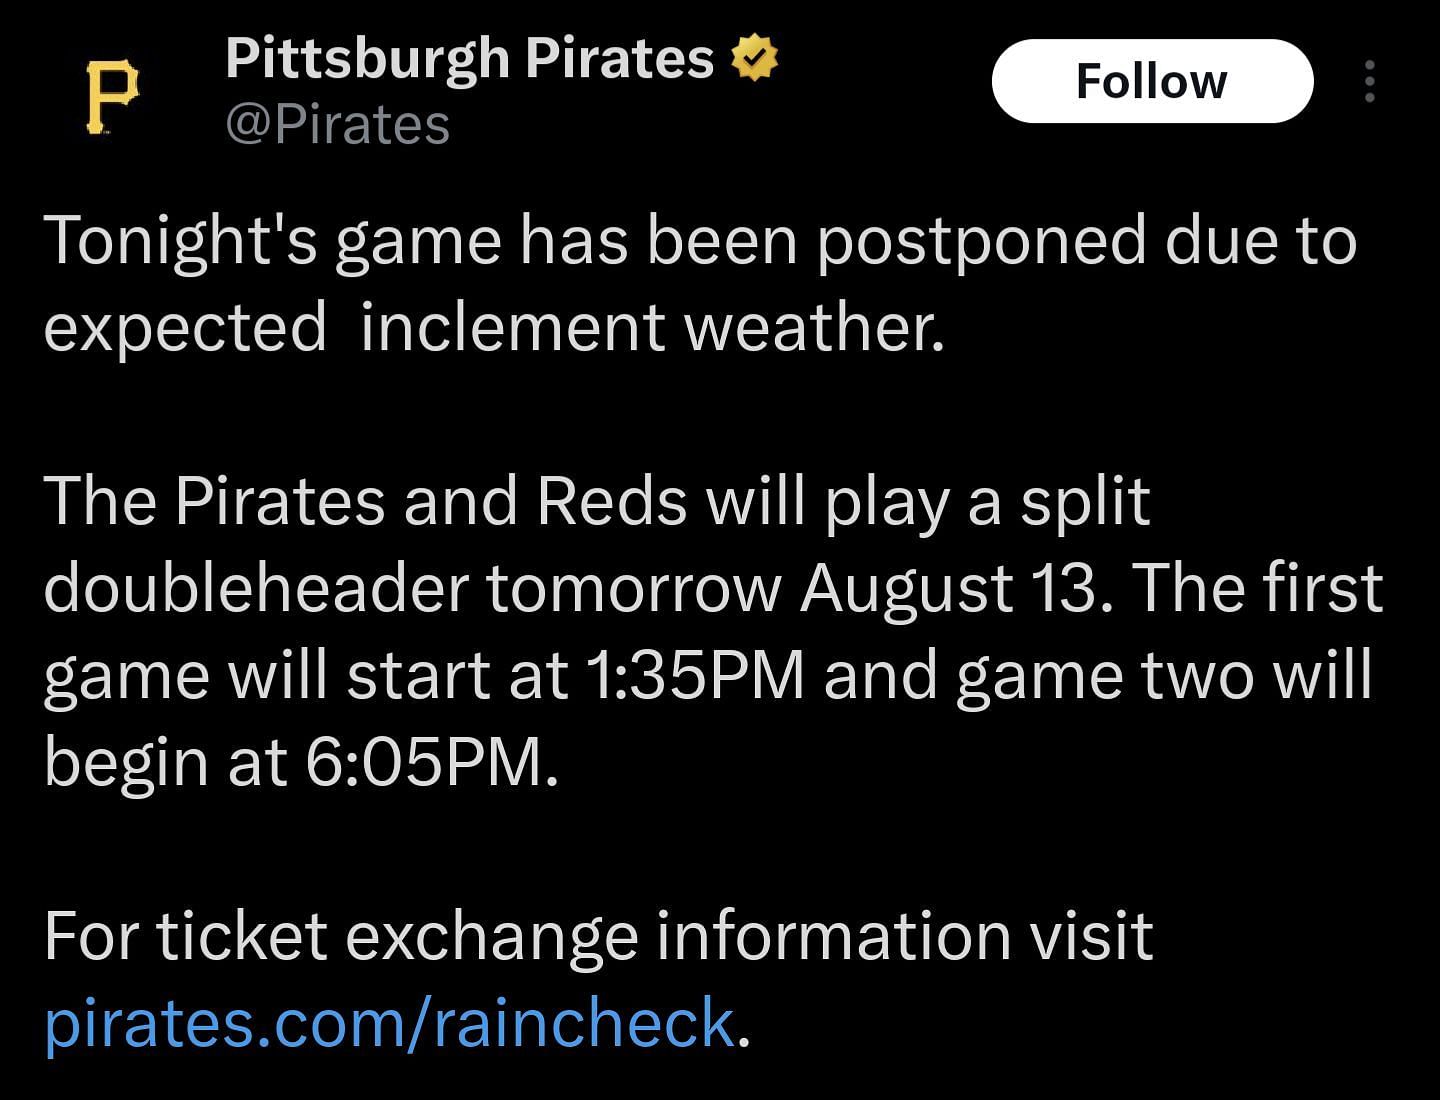 Pirates Ticket Information